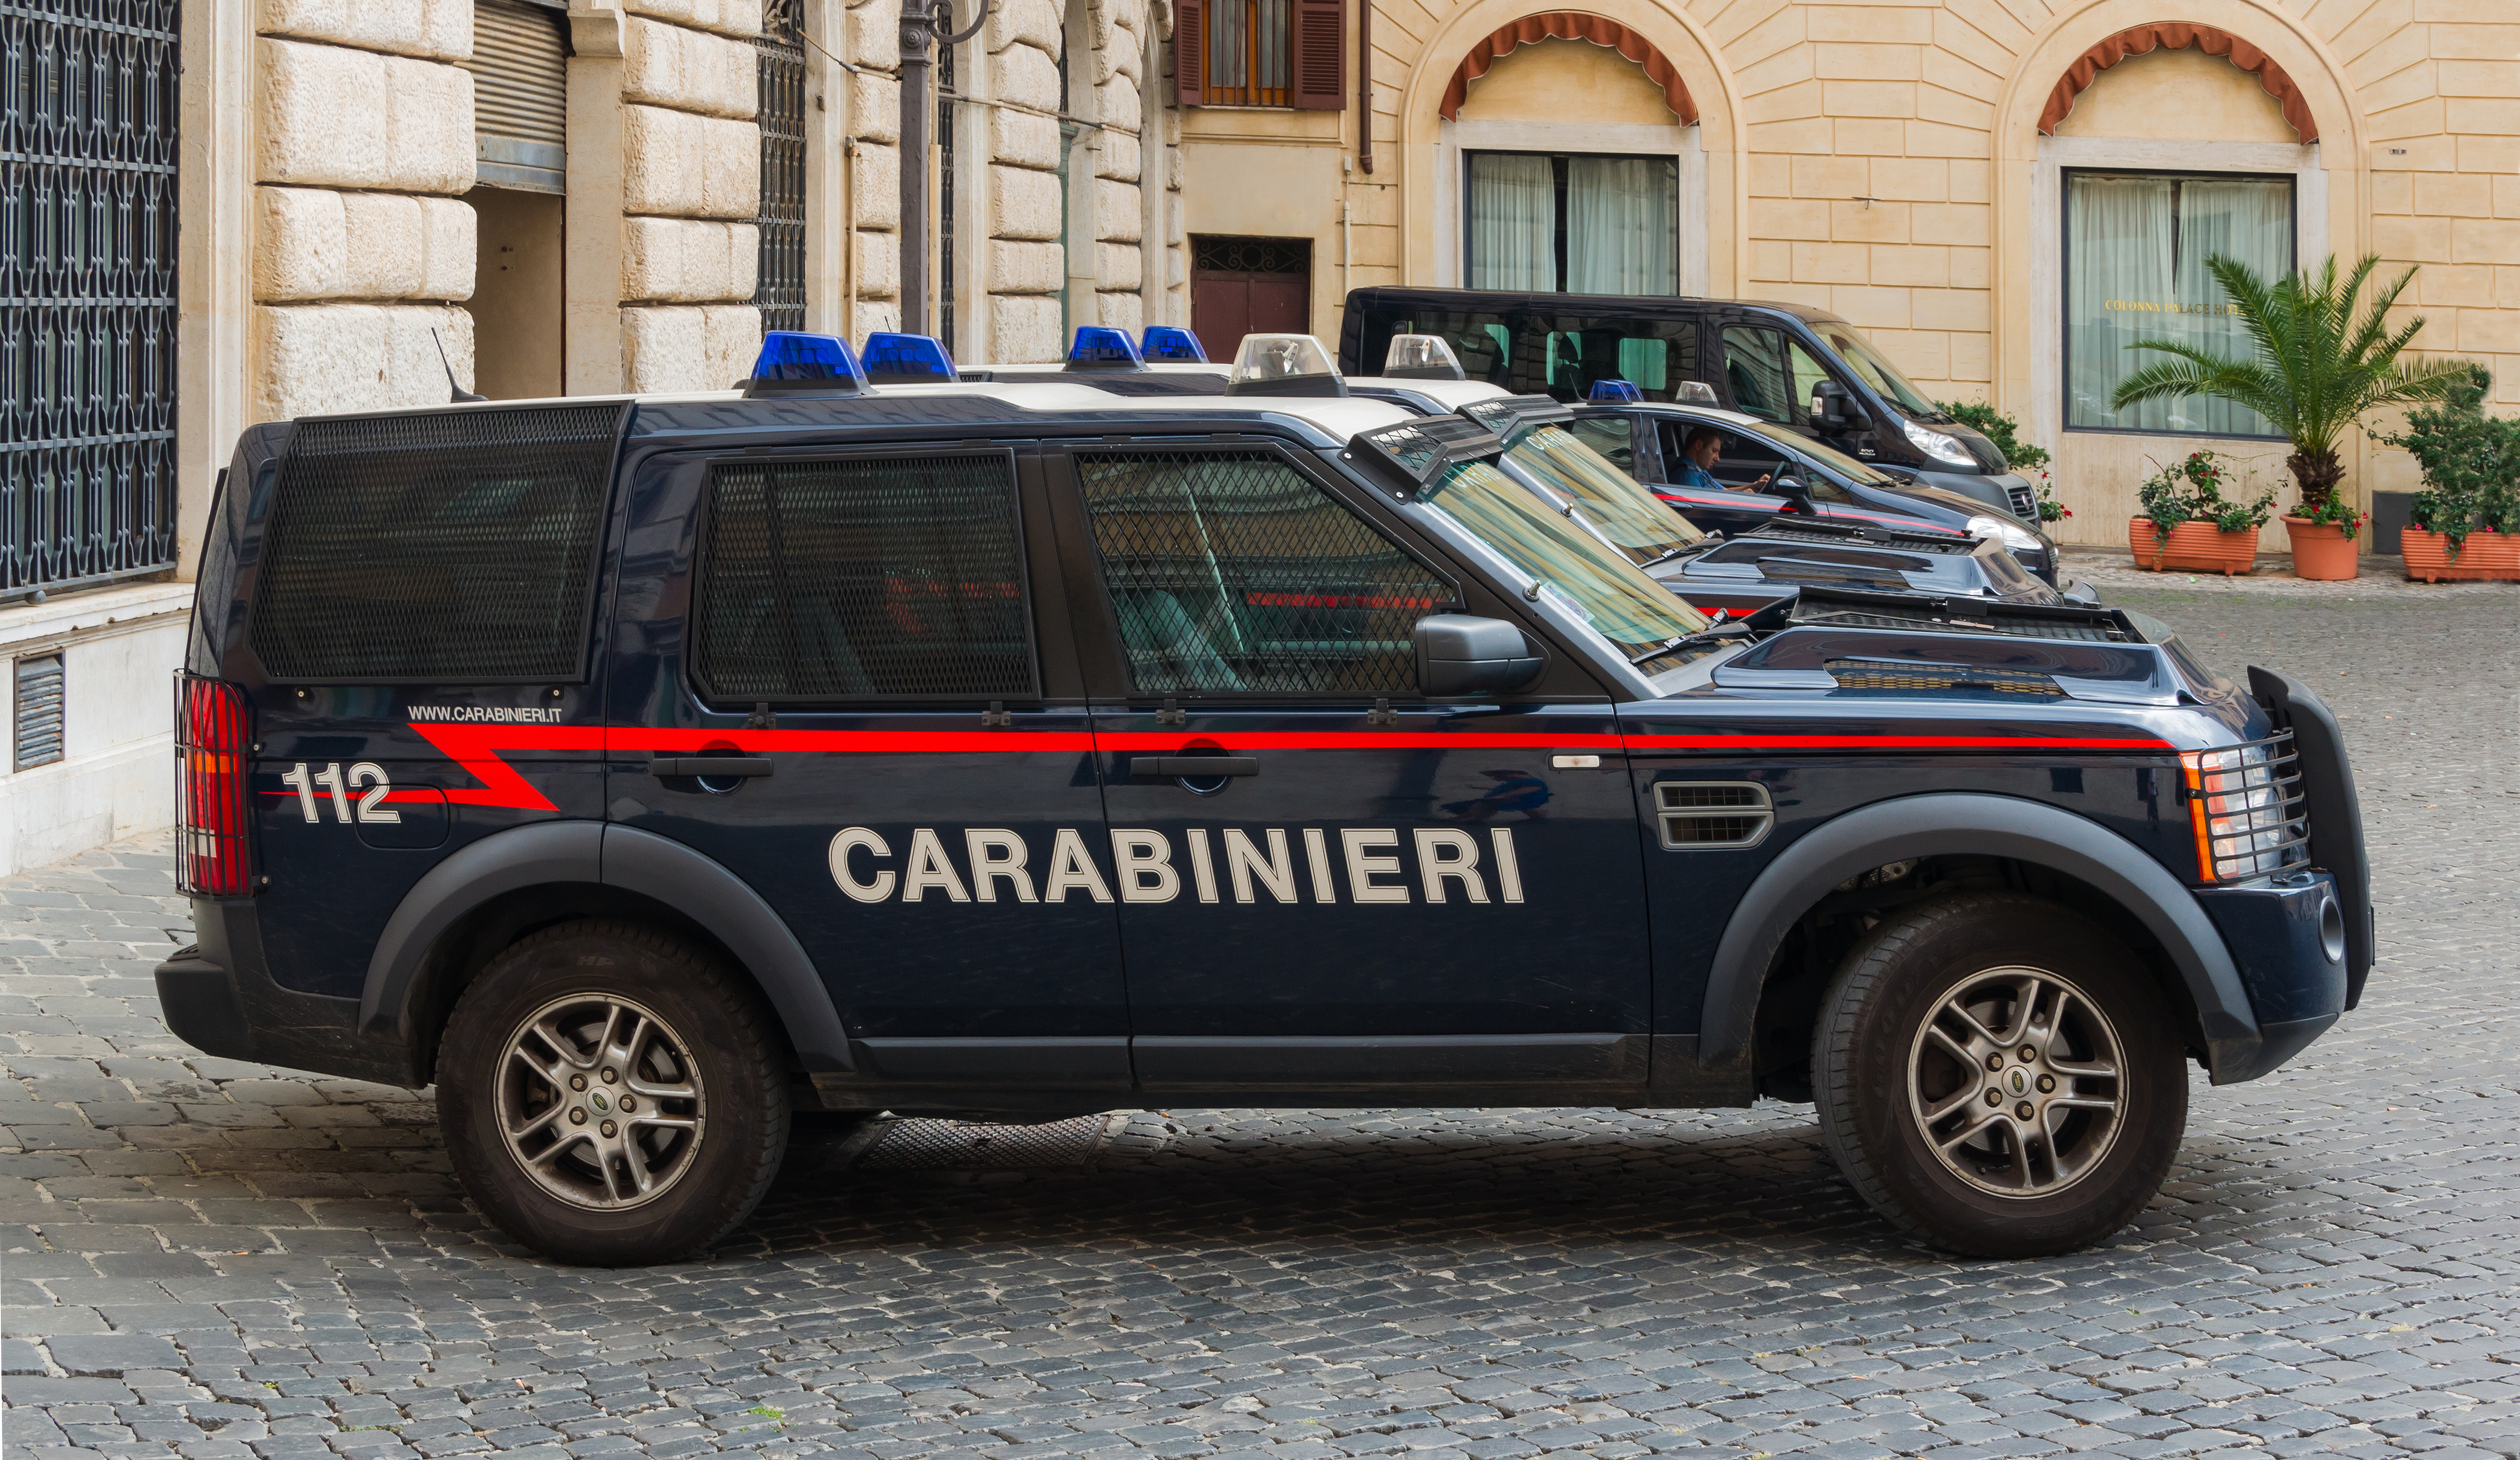 Land Rover Carabinieri, Rome, Italy